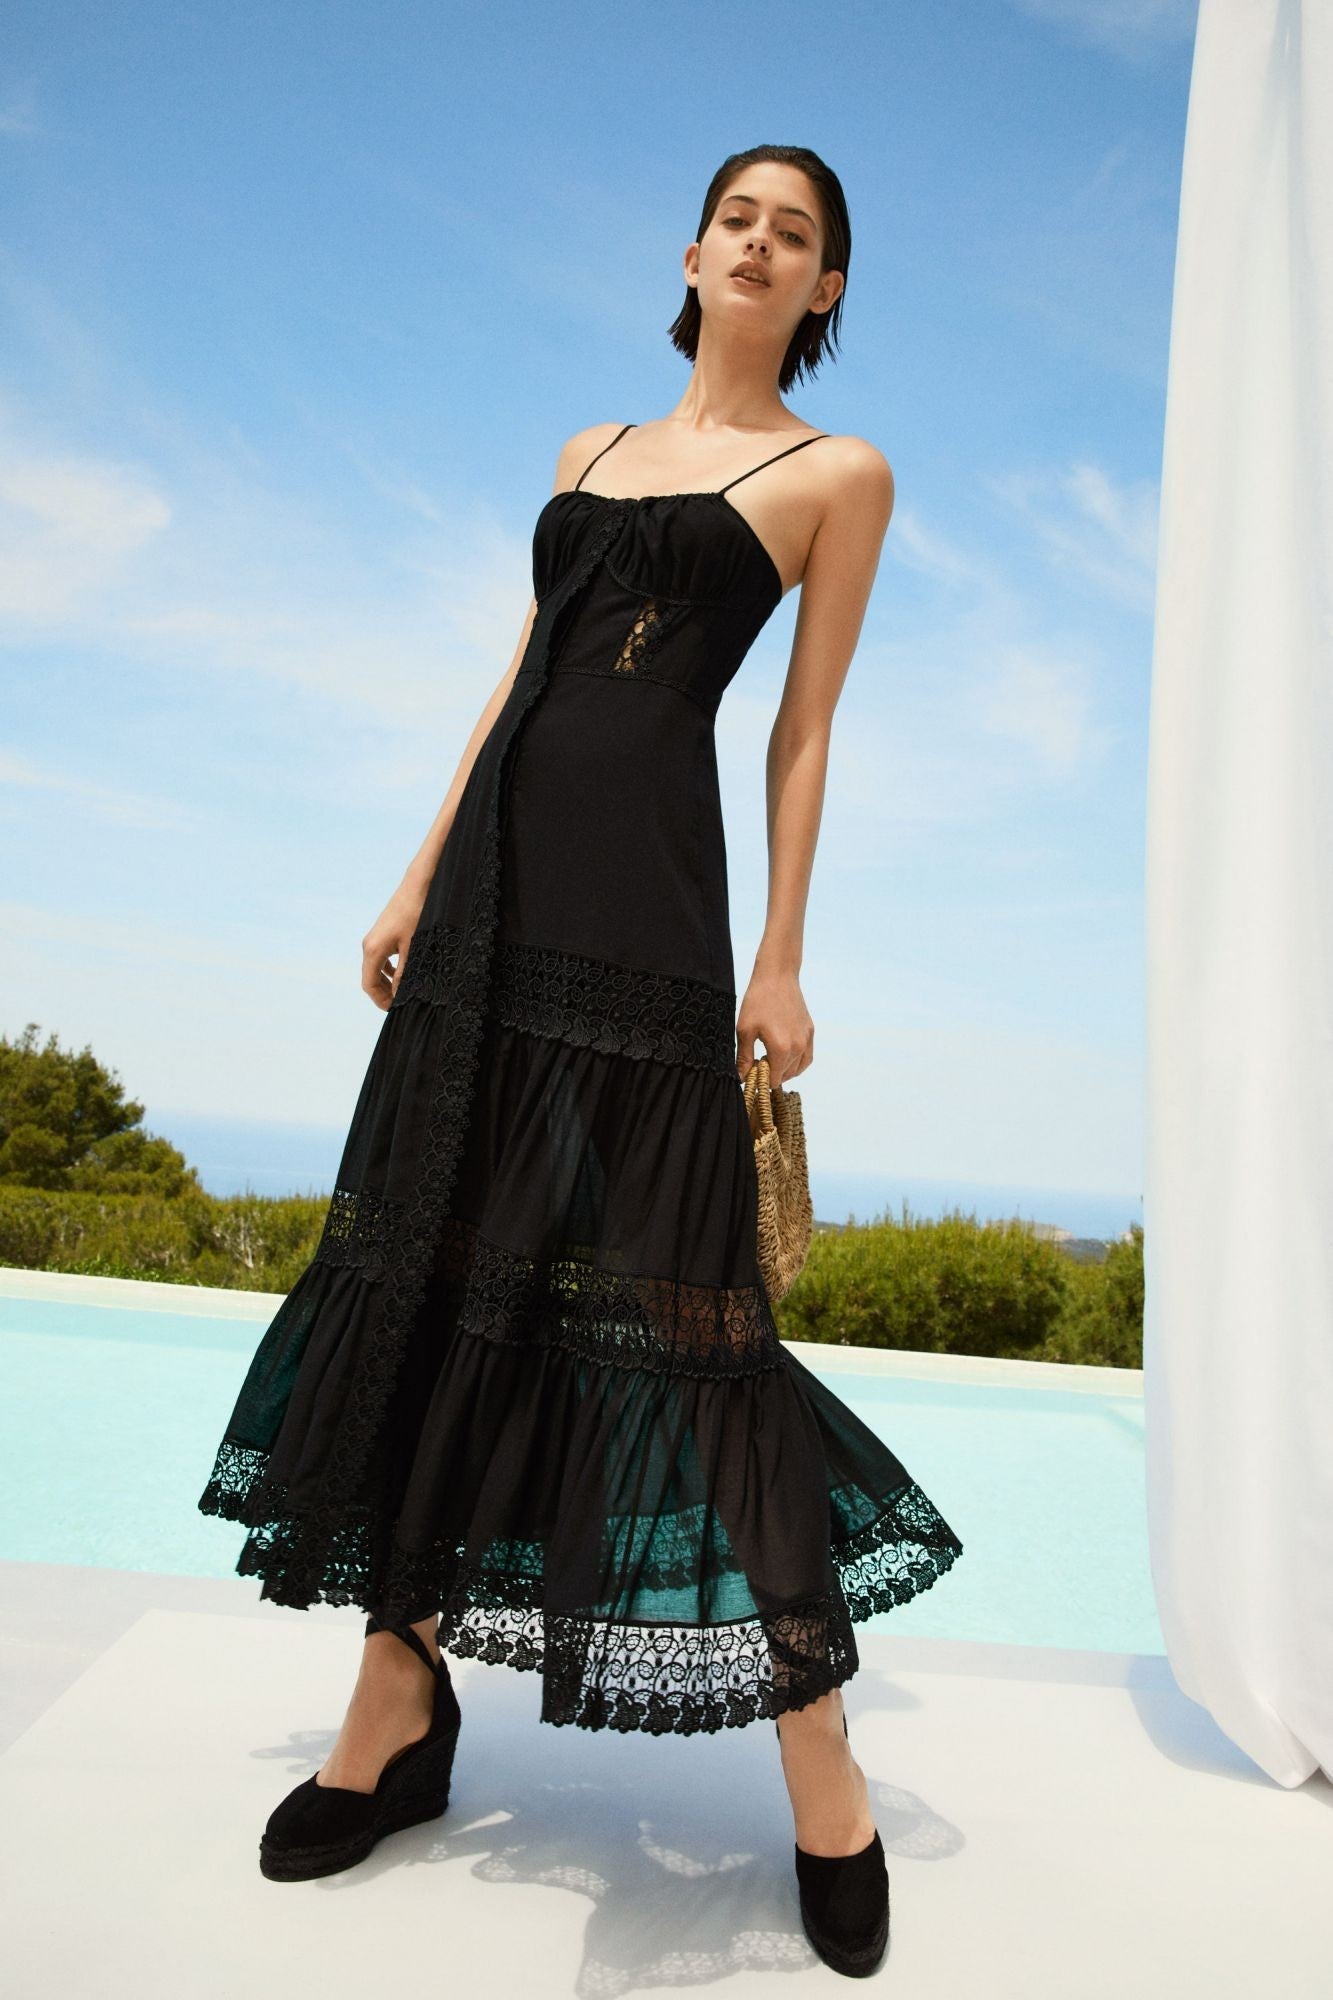 Charo Ruiz Marisa Long Dress - Premium Long dress from Marina St Barth - Just $755.00! Shop now at Marina St Barth